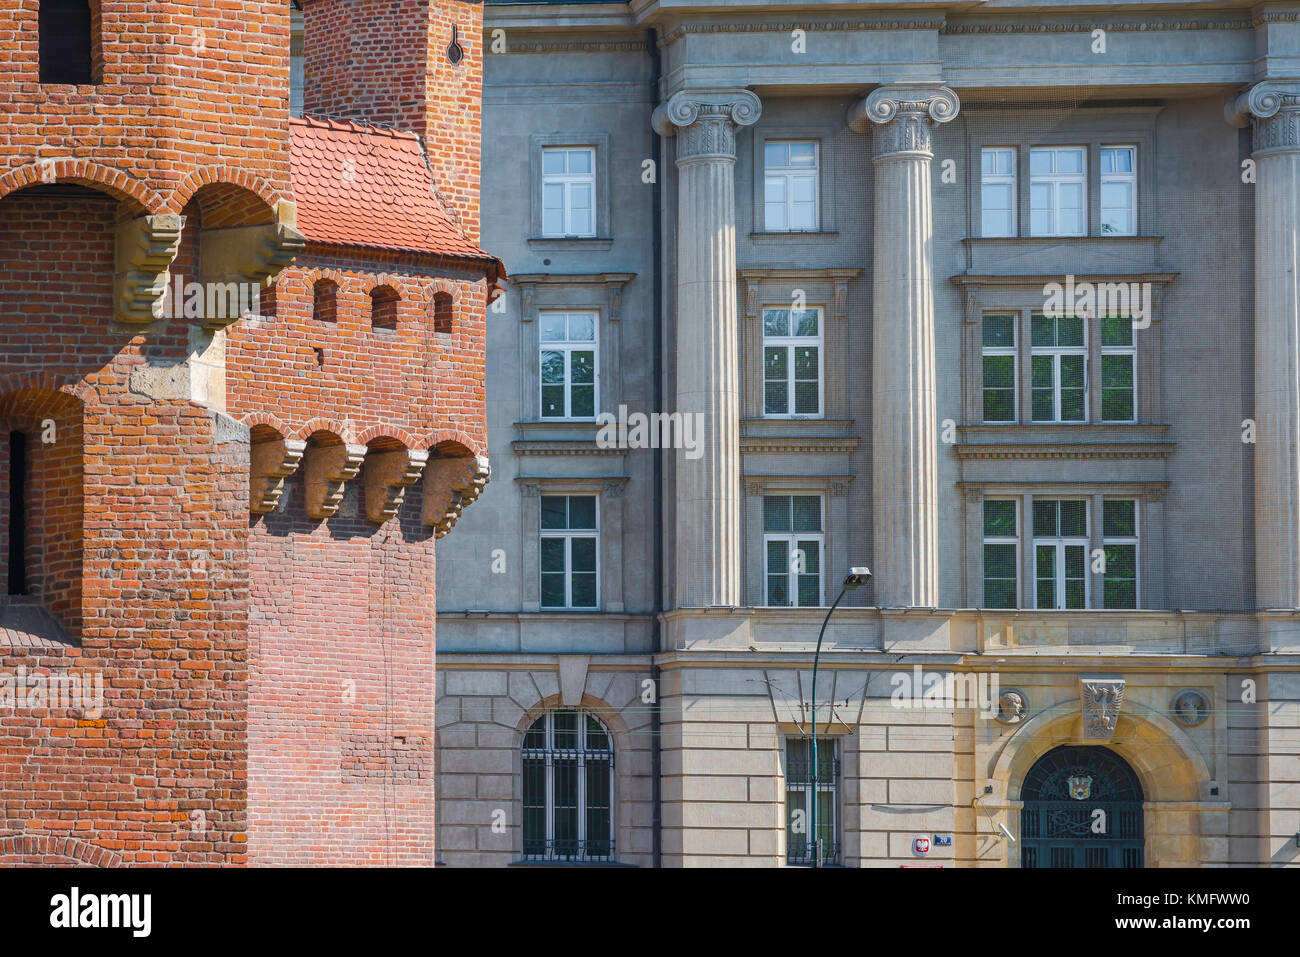 Krakau Architektur, die Ostflanke des mittelalterlichen Barbican kontrastiert mit einem neoklassischen Gebäude aus dem 19. Jahrhundert in Krakau, Polen. Stockfoto